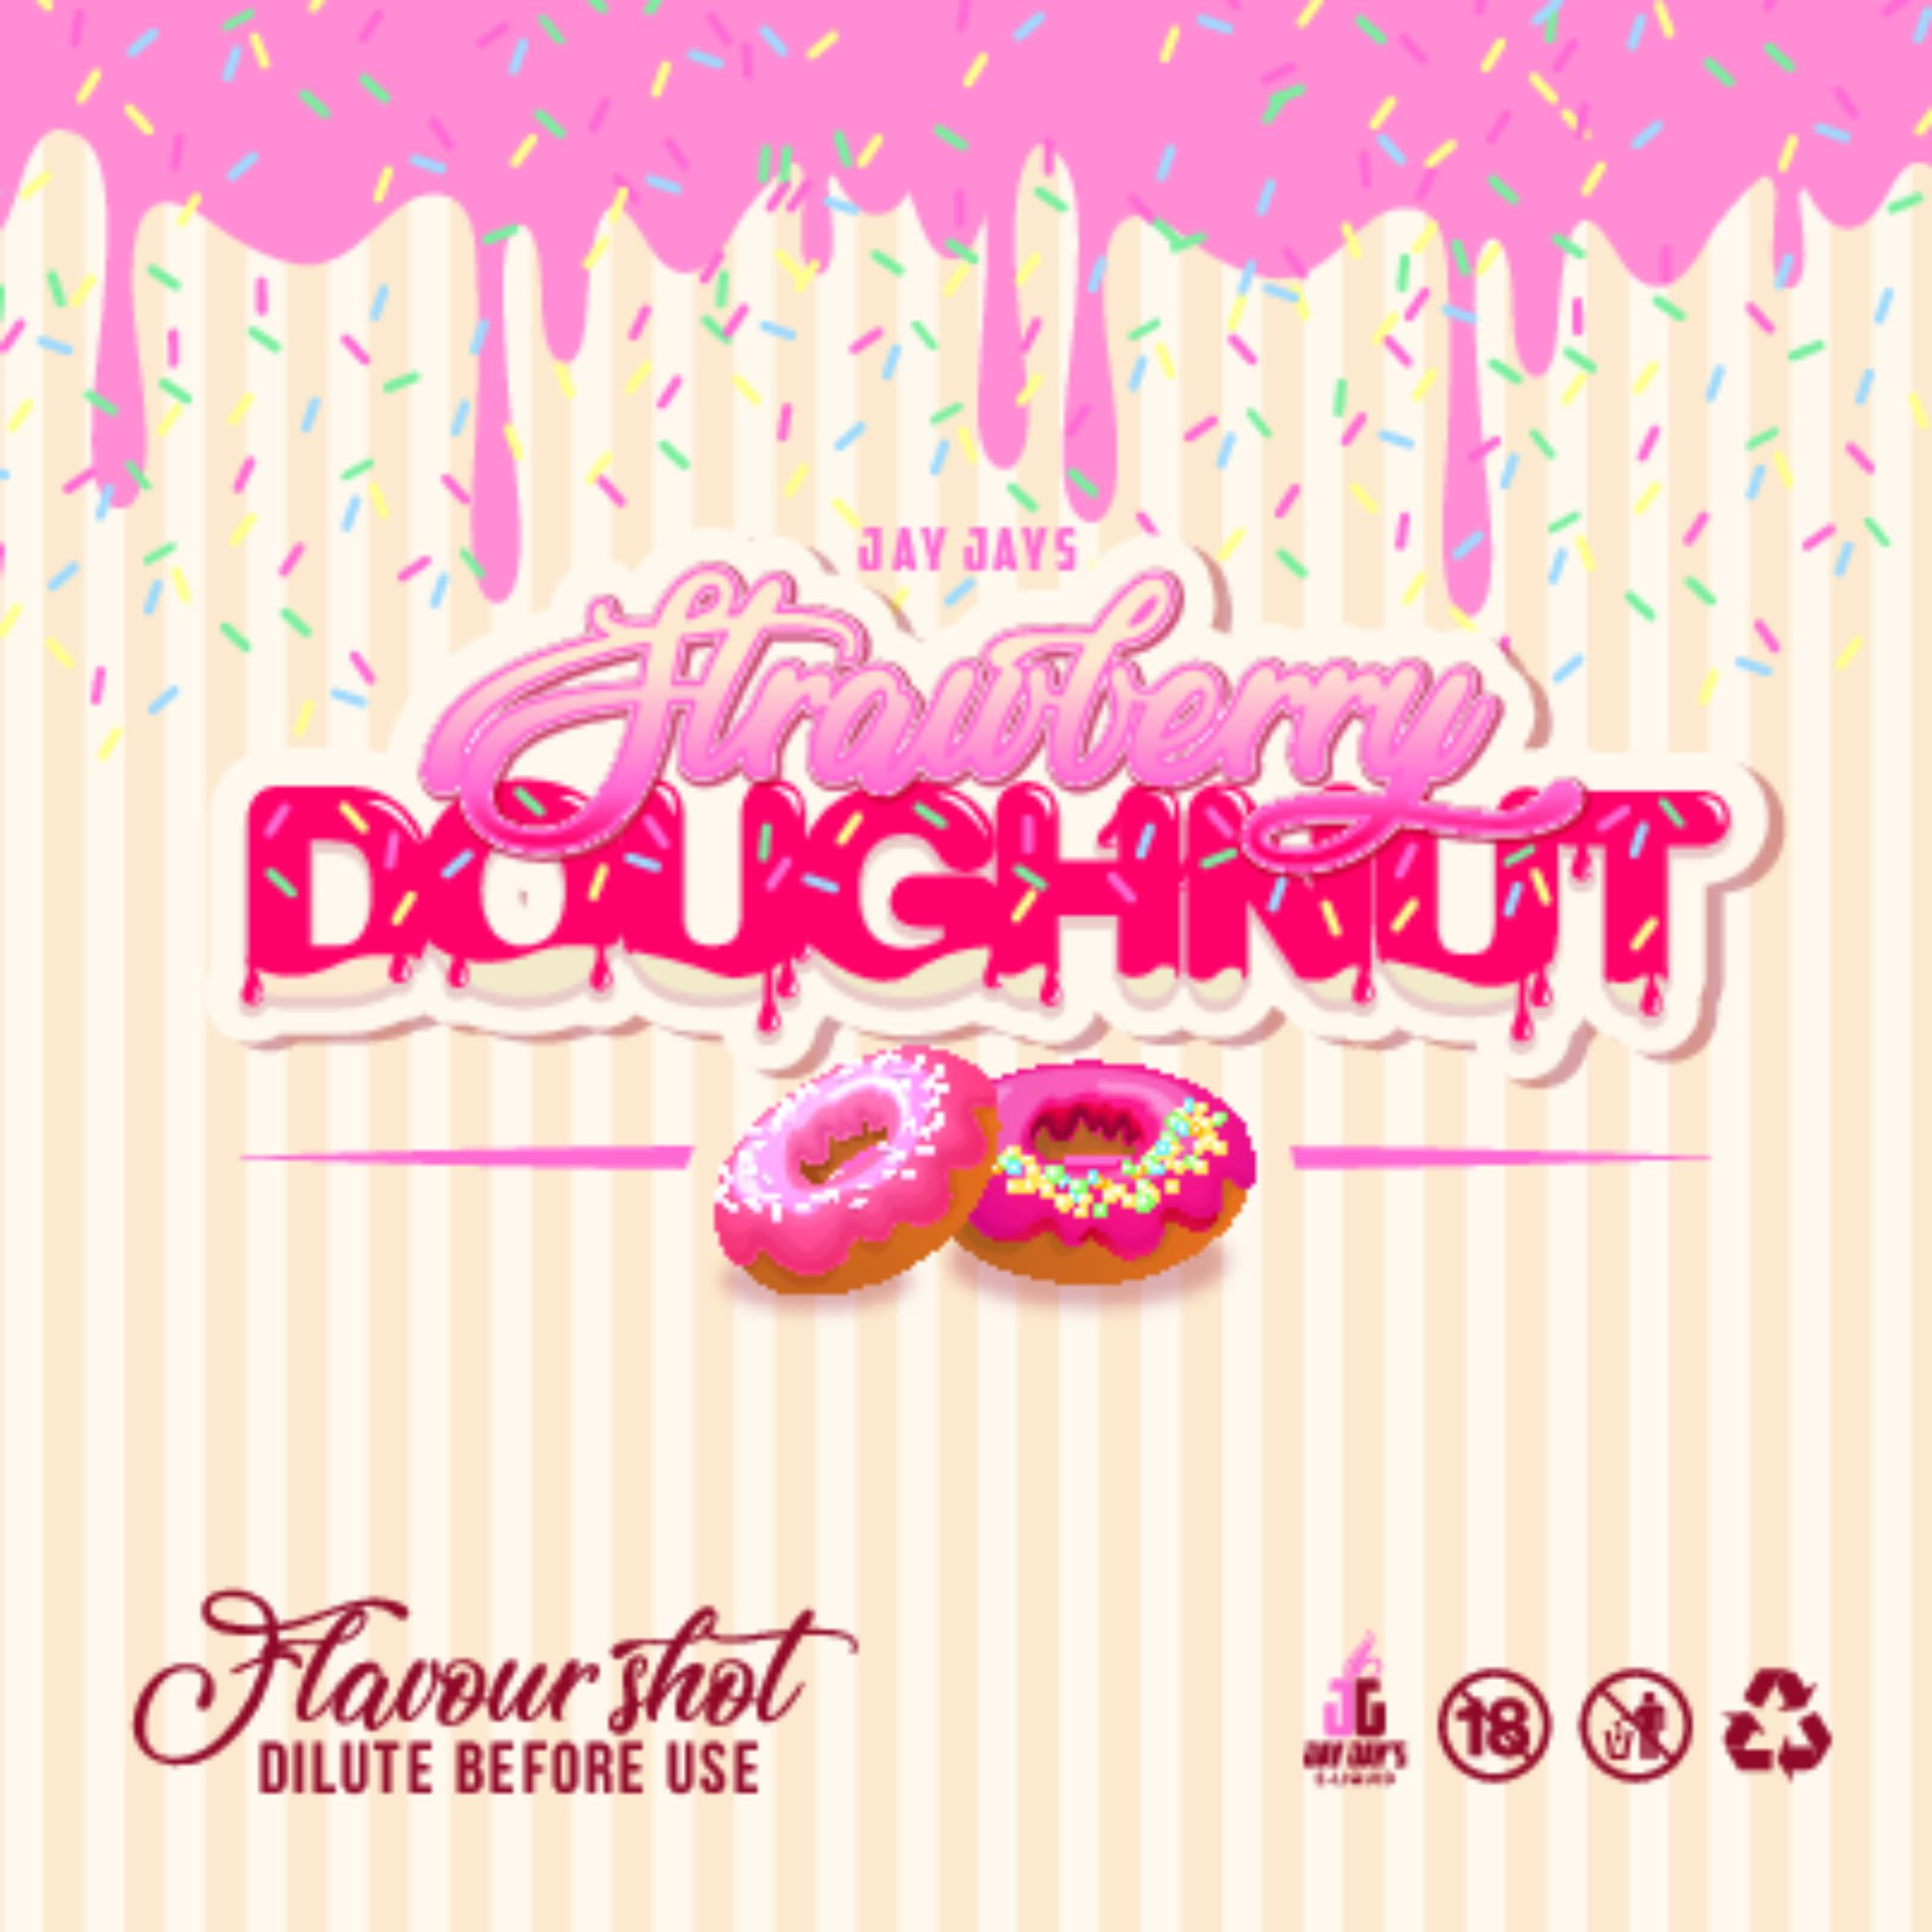 JJ_Strawberry Doughnut_Flavour Shot_60ml